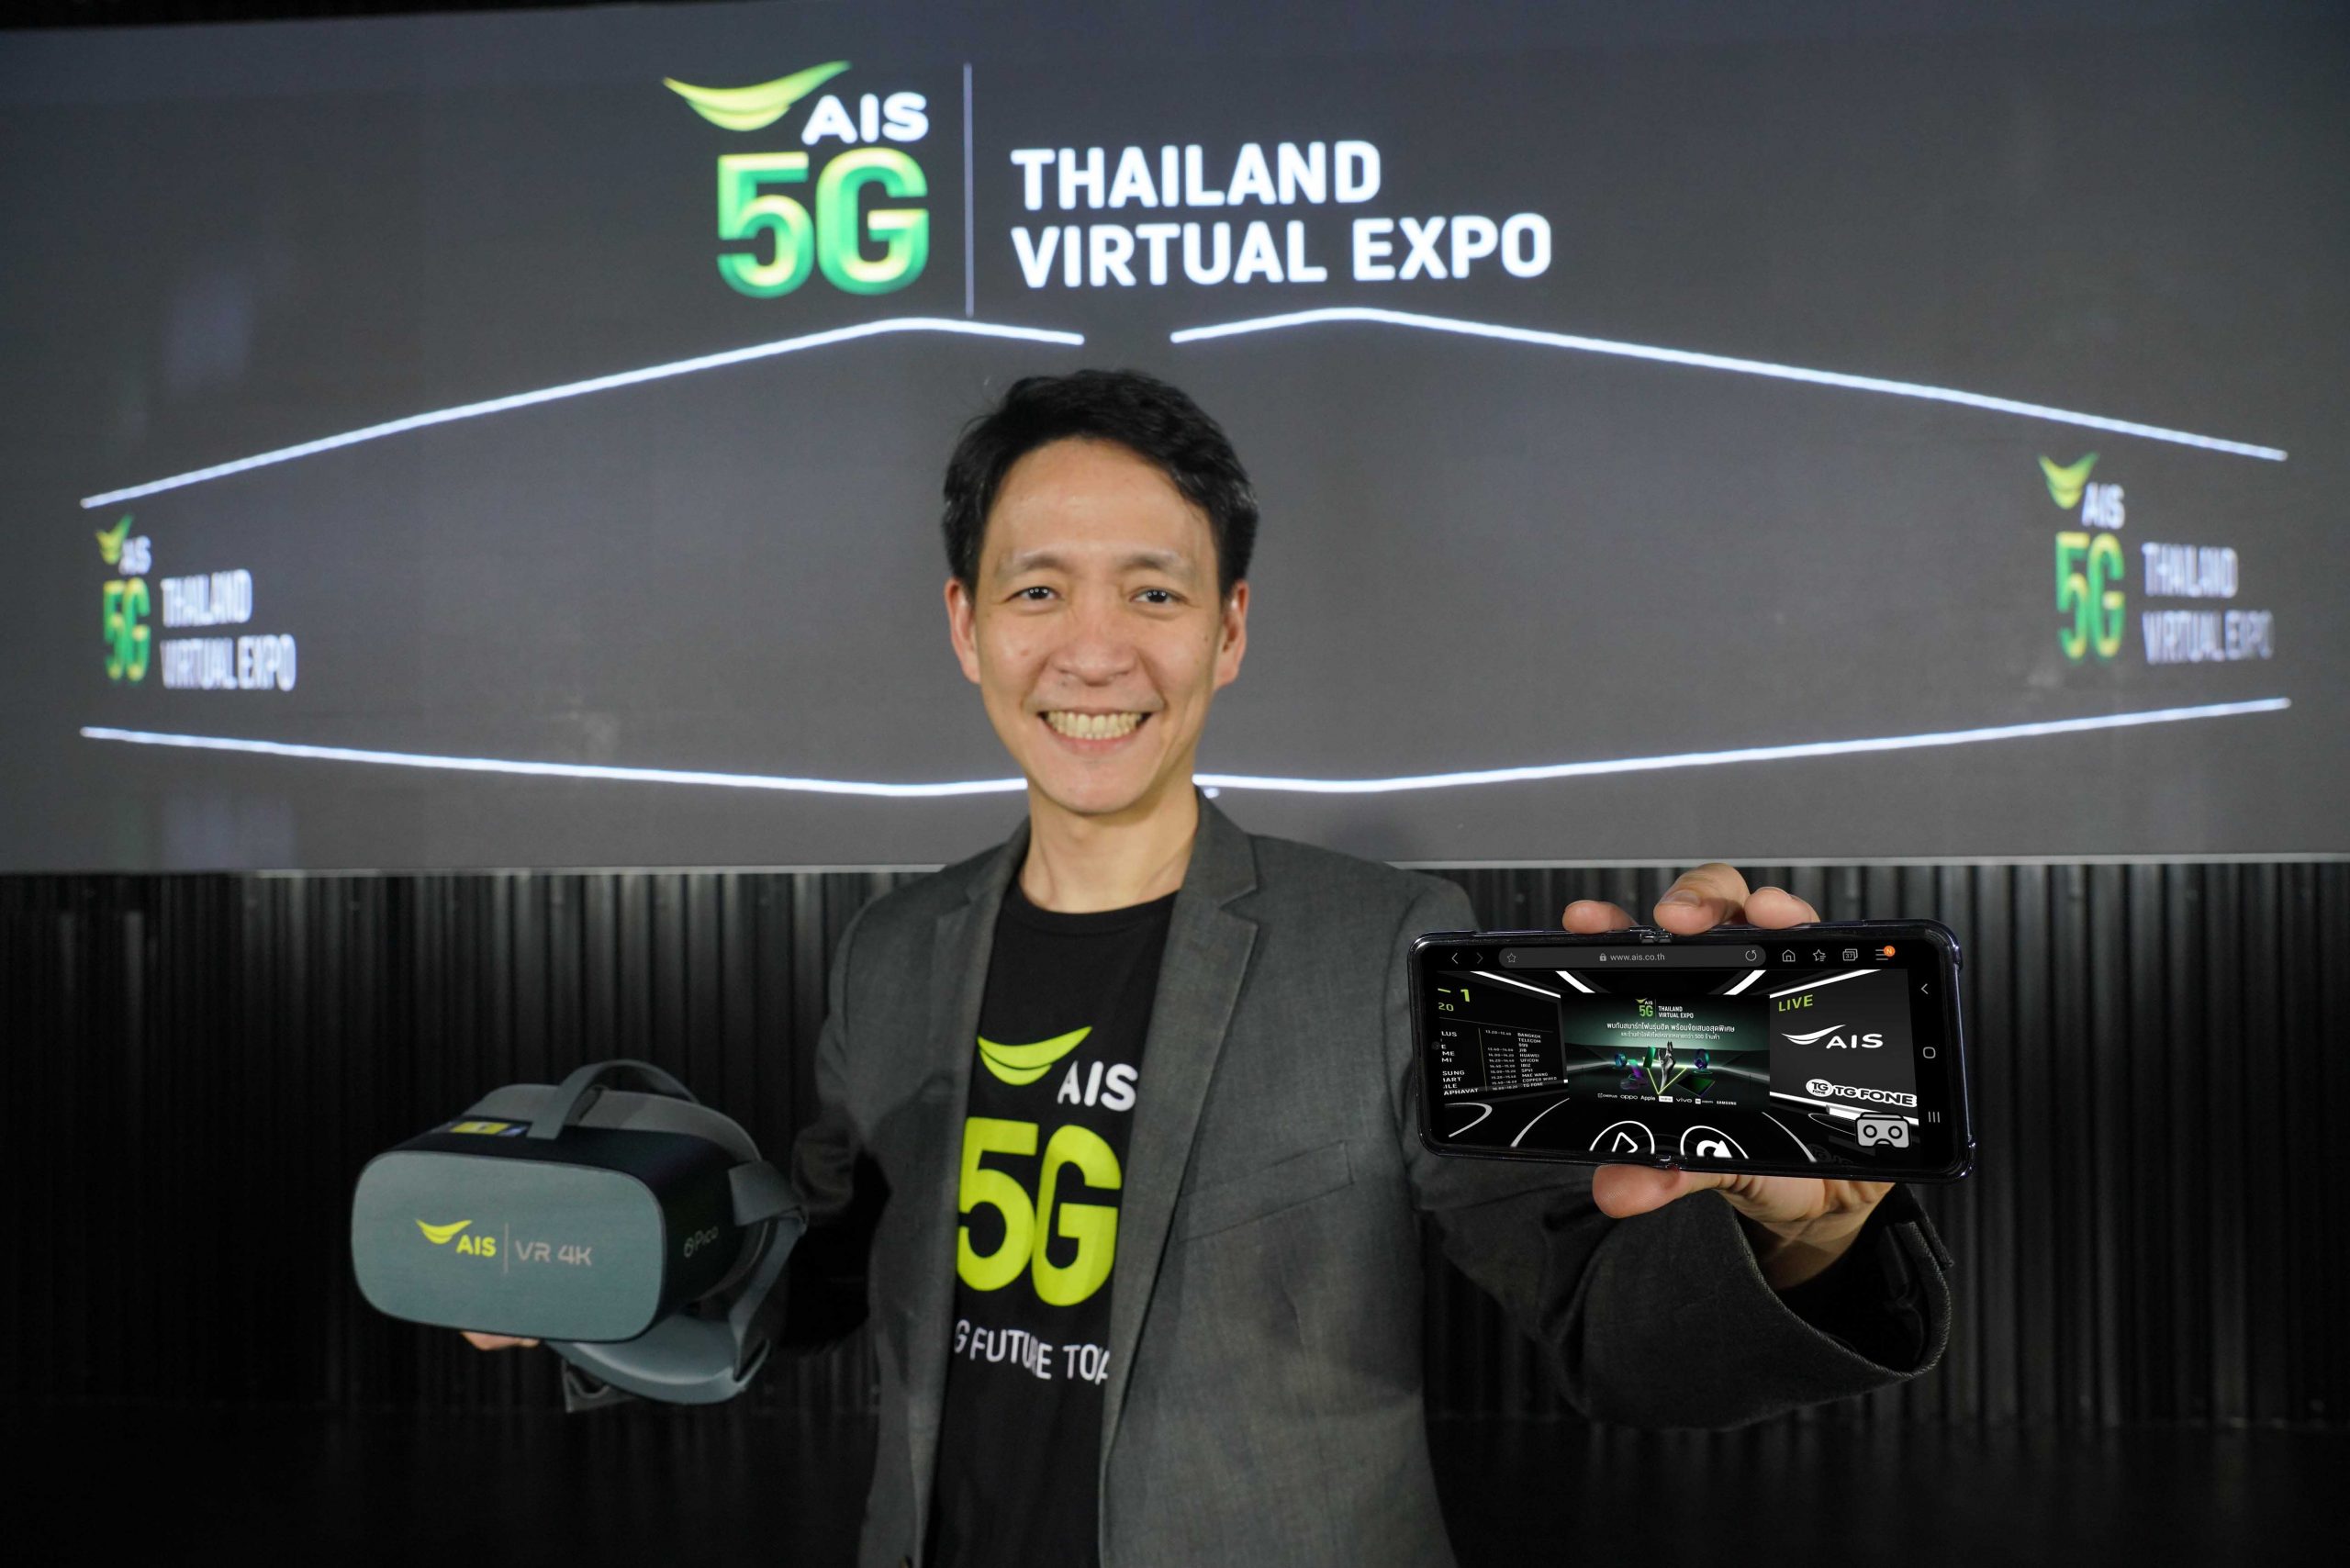 AIS 5G Thailand Virtual Expo เผยยอดผู้เข้าชมงาน ตลอด 5 วัน กว่า 9.7 แสนคน จากทุกจังหวัดทั่วประเทศ